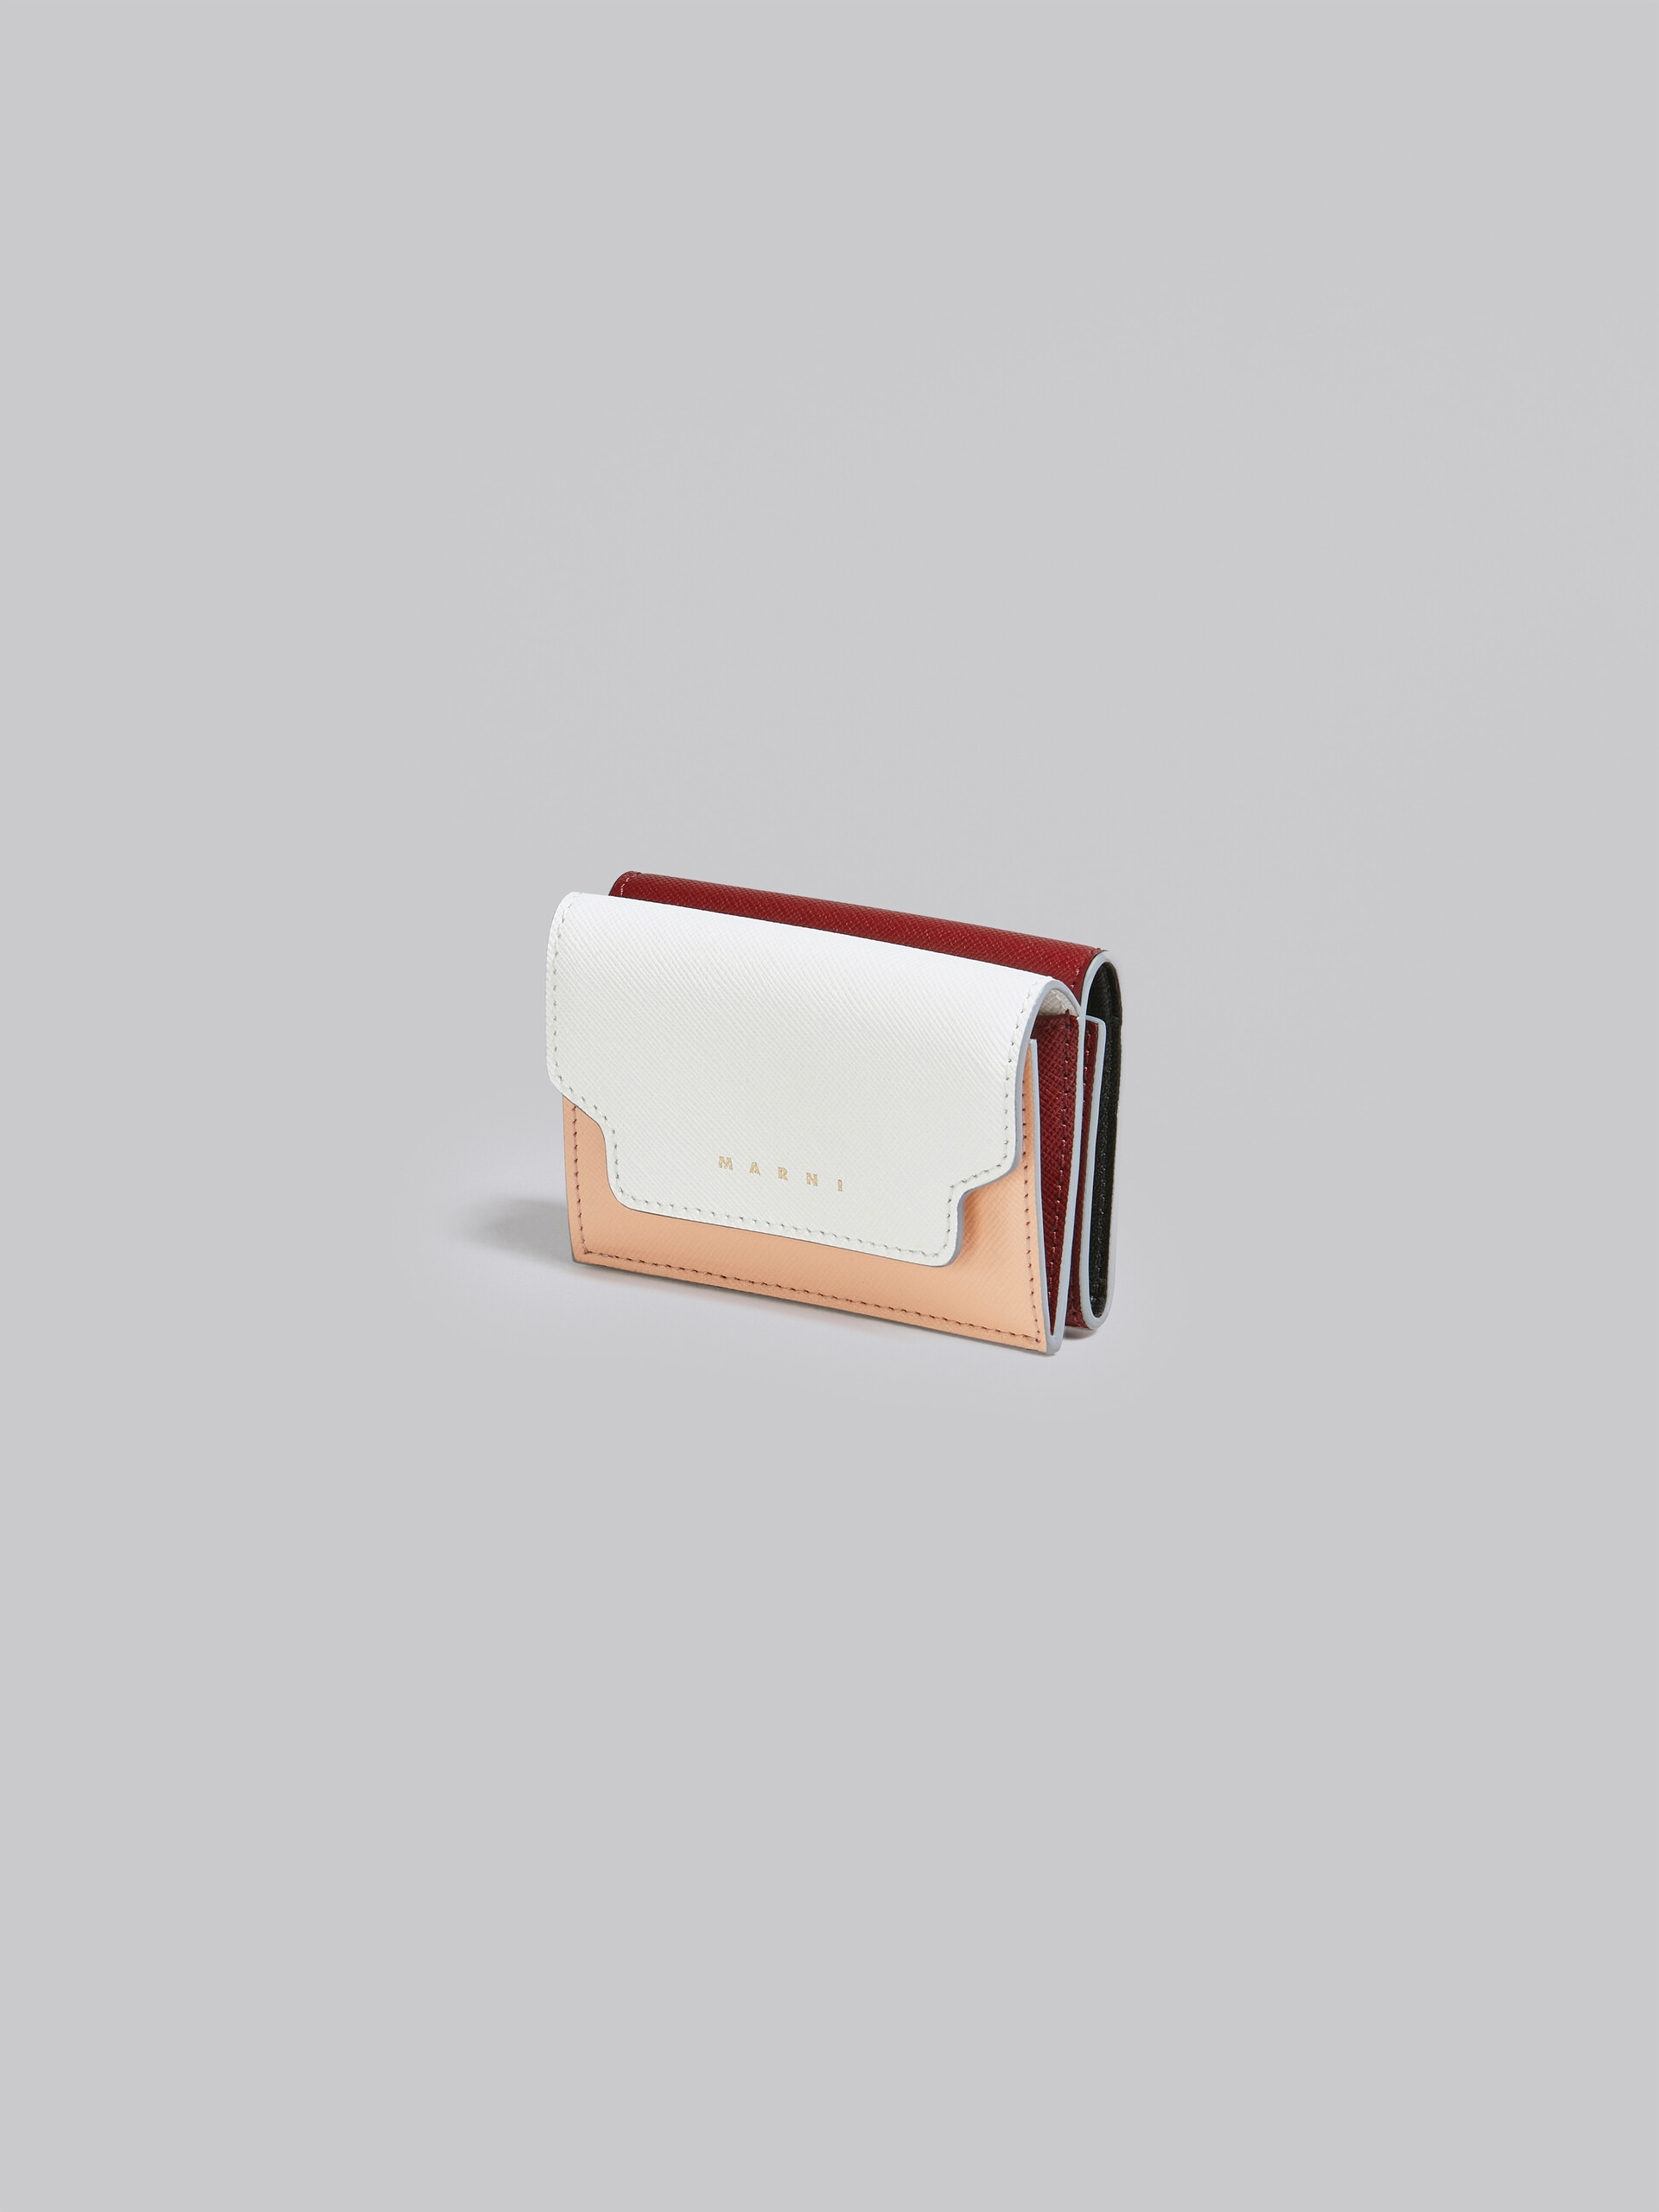 Dreifach faltbare Brieftasche aus Saffianleder in Weiß, Pink und Rot - Brieftaschen - Image 4